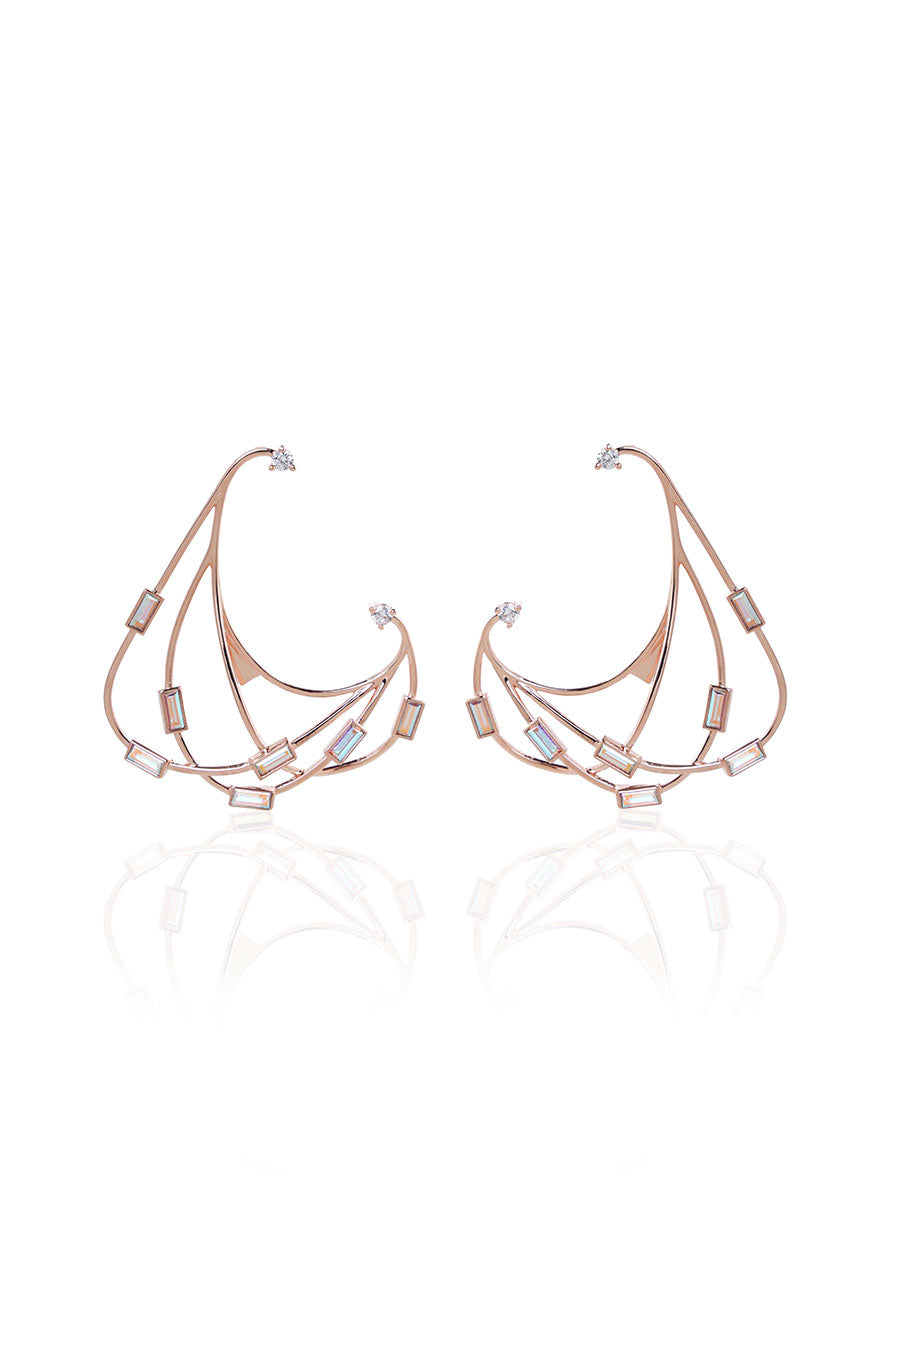 Raven Swarovski Rose Gold Earrings